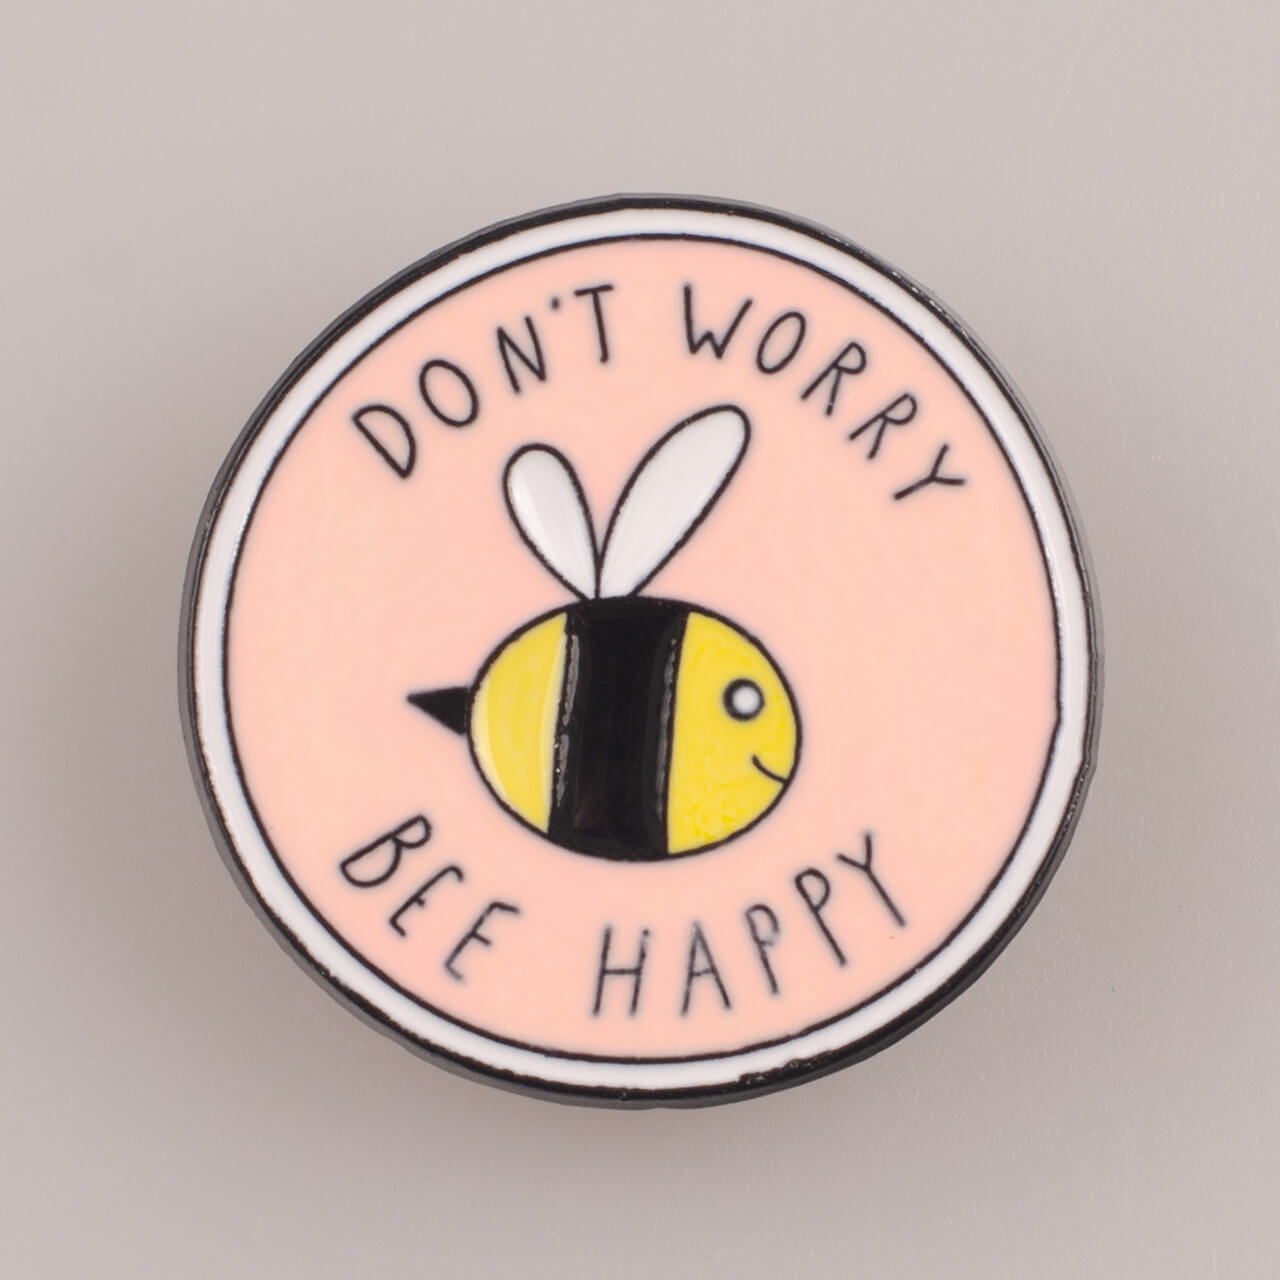 Don't Worry Bee Happy, owalny znaczek pin, śr. 30 mm